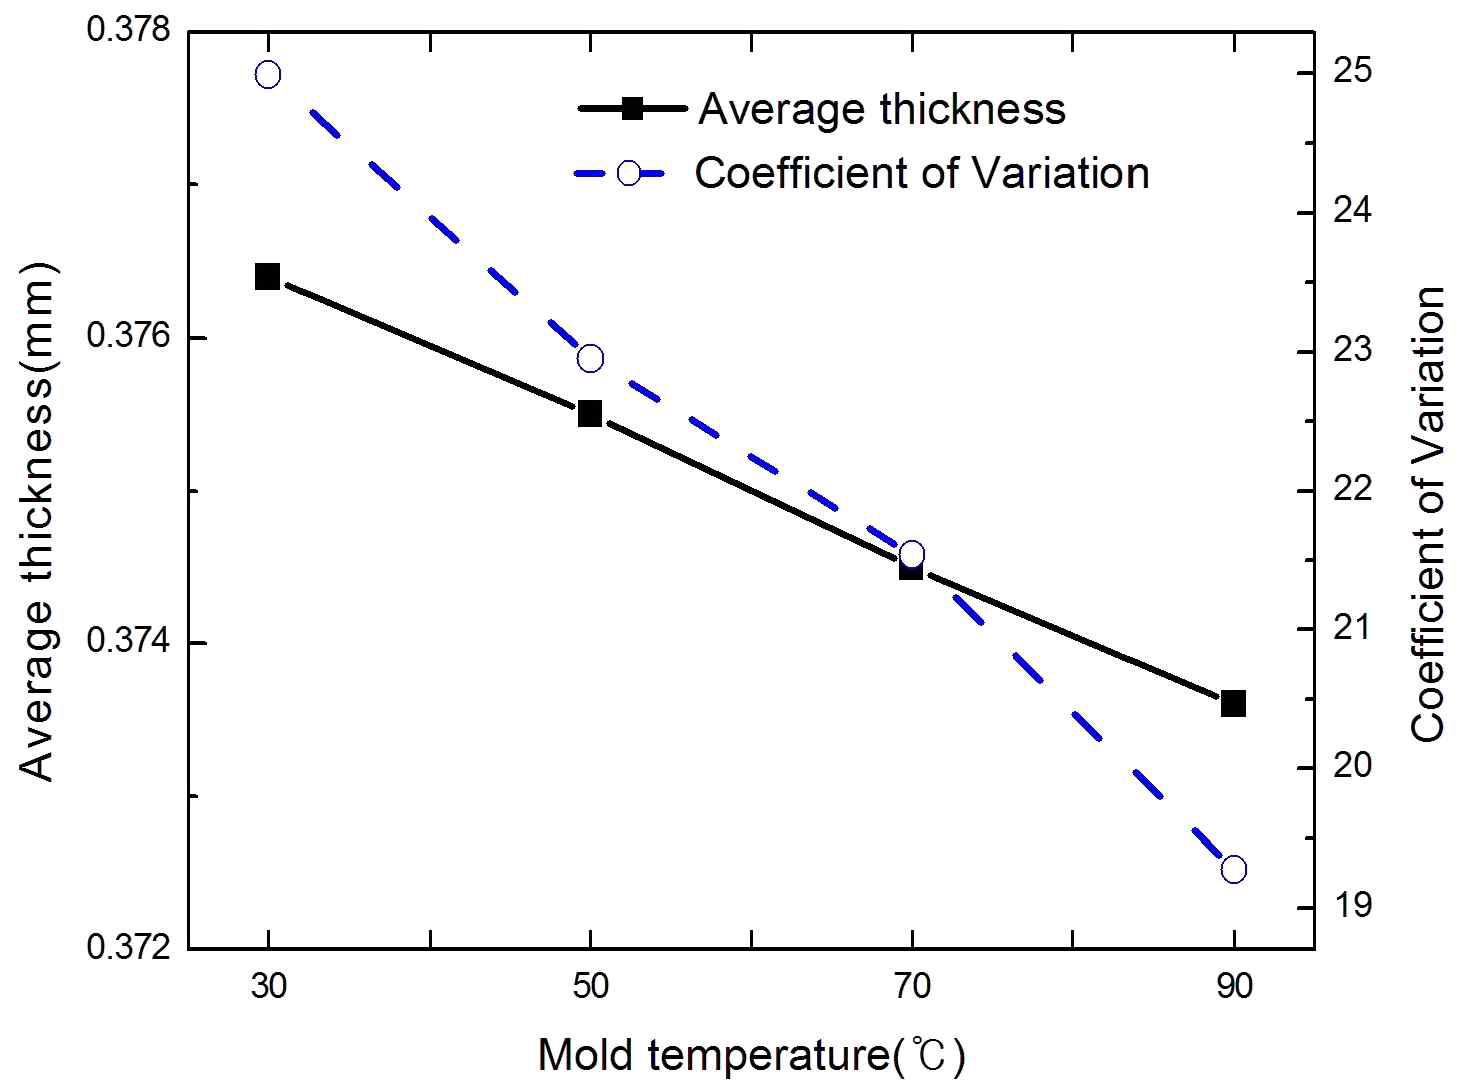 금형온도에 따른 필름 평균두께와 두께변동계수(COV)